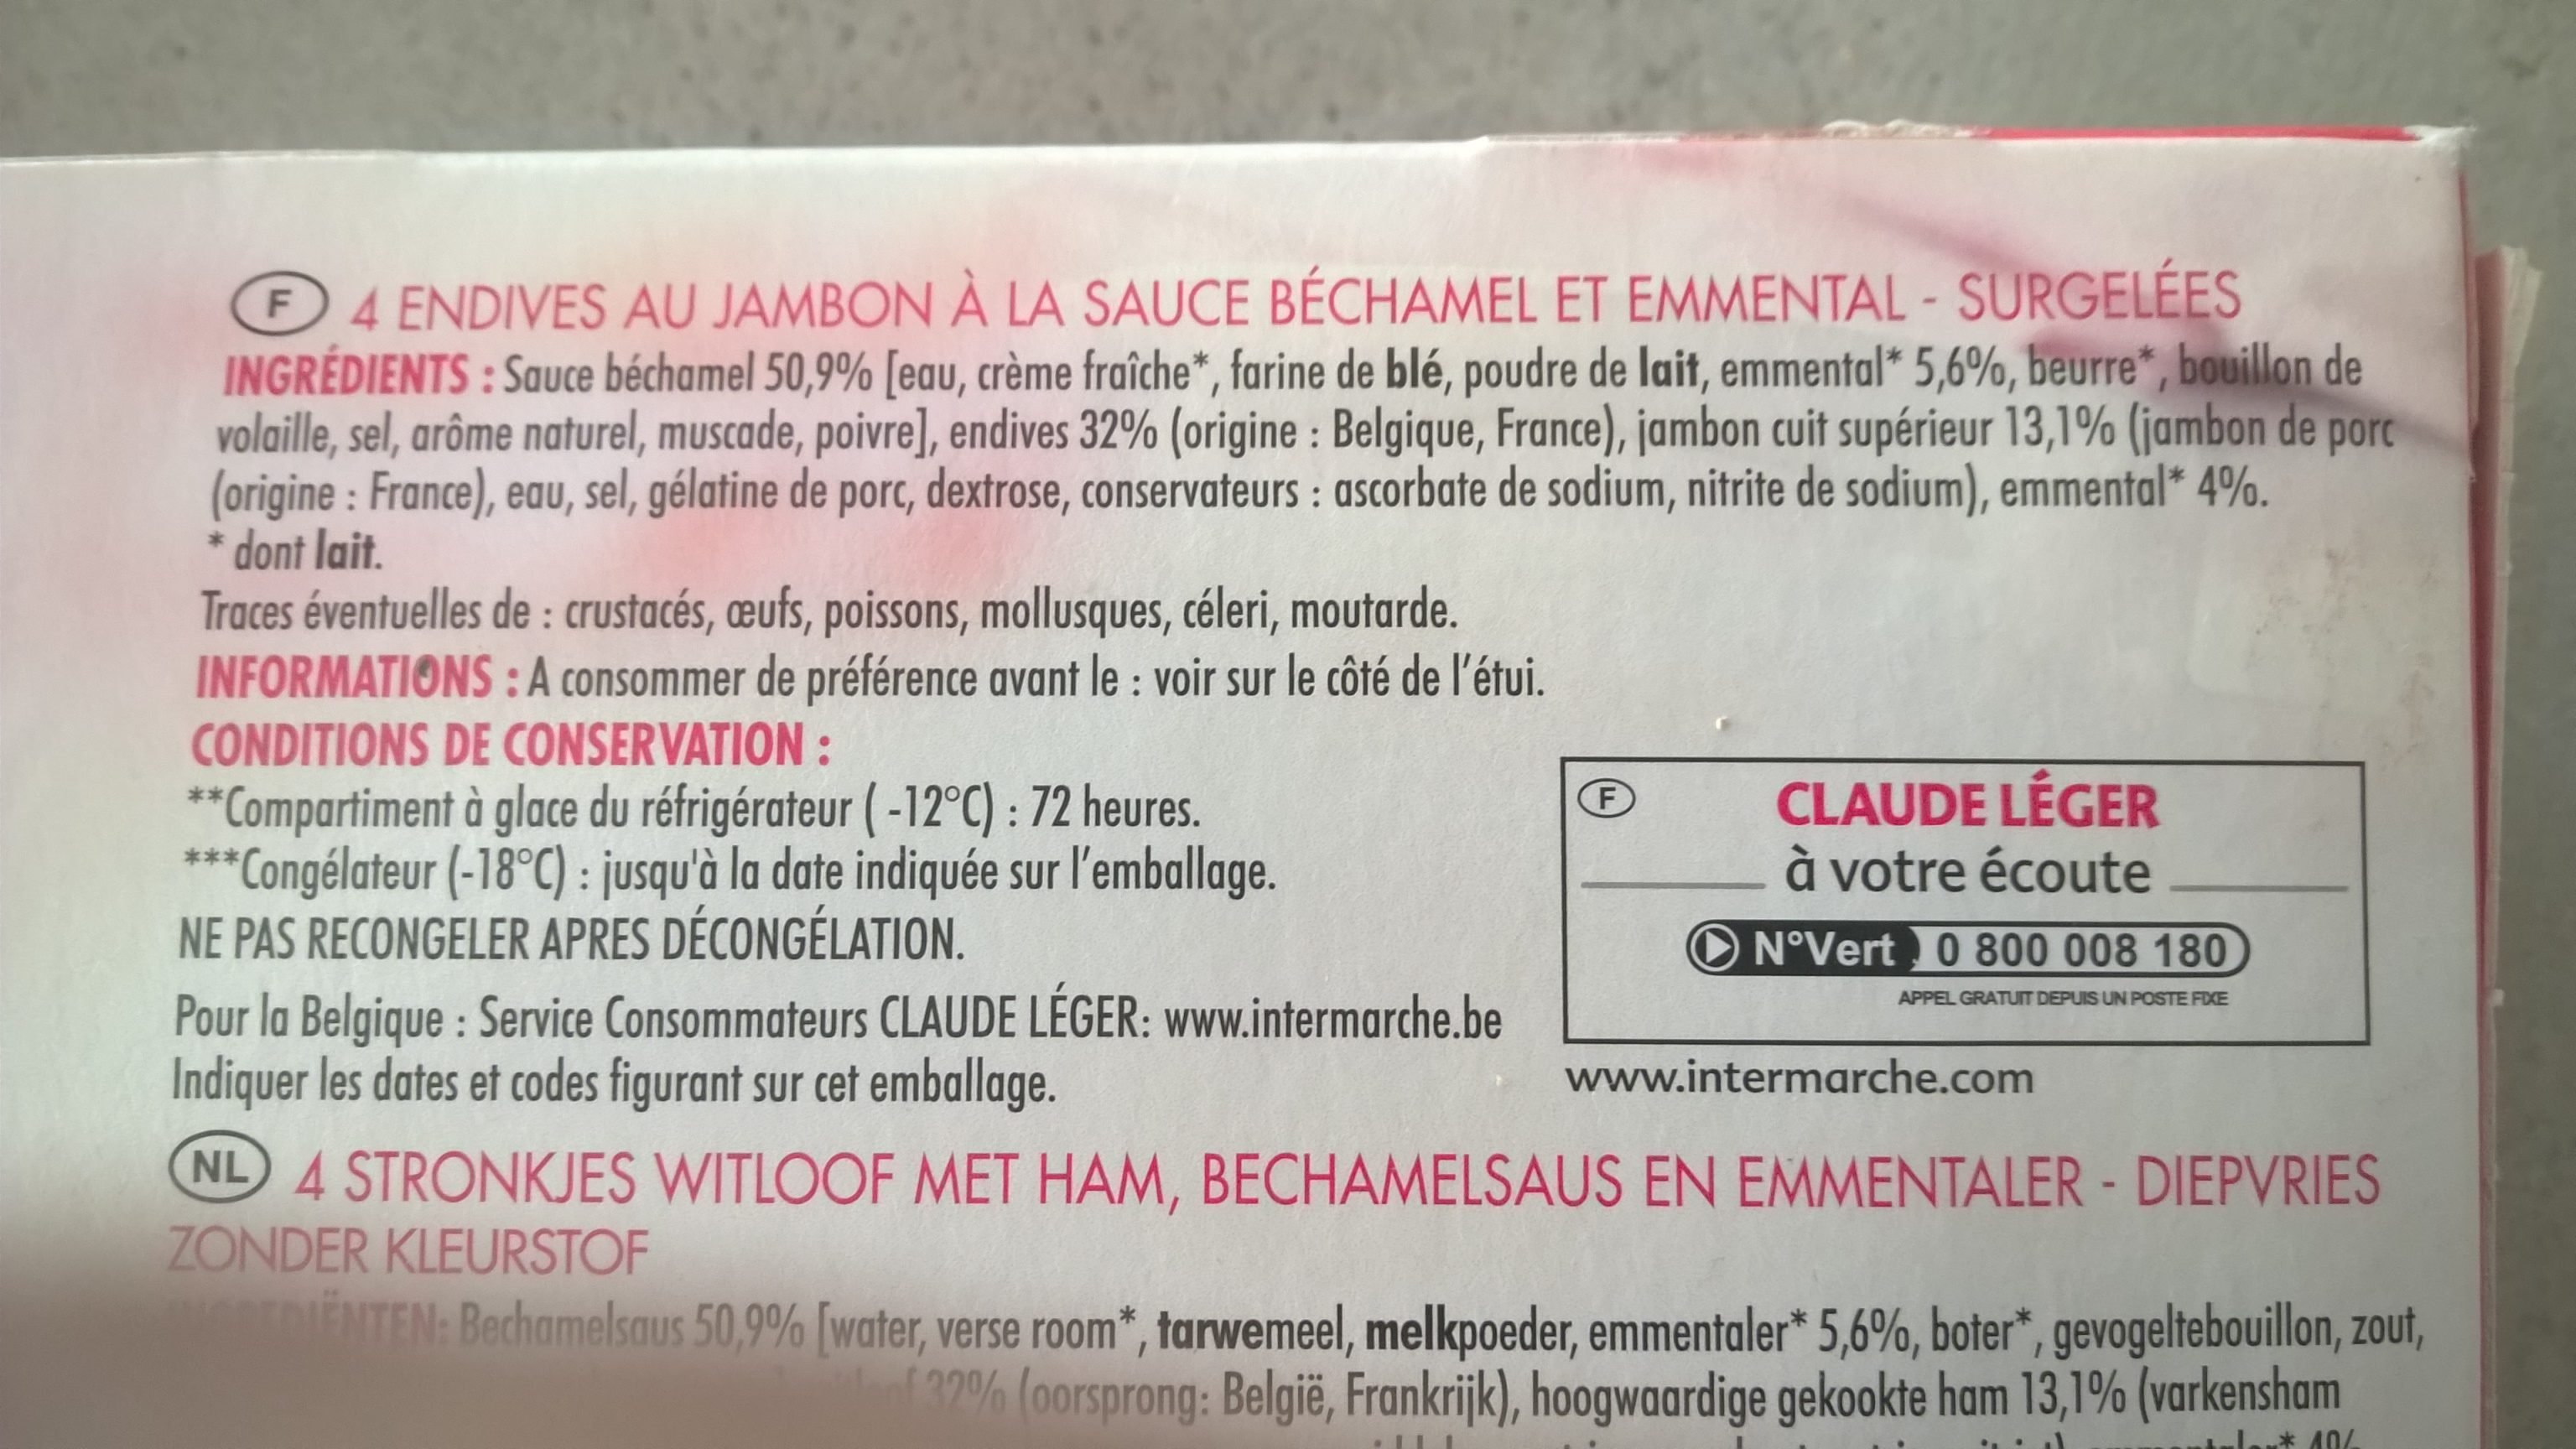 Endives au jambonSauce béchamel et emmental - Produkt - fr